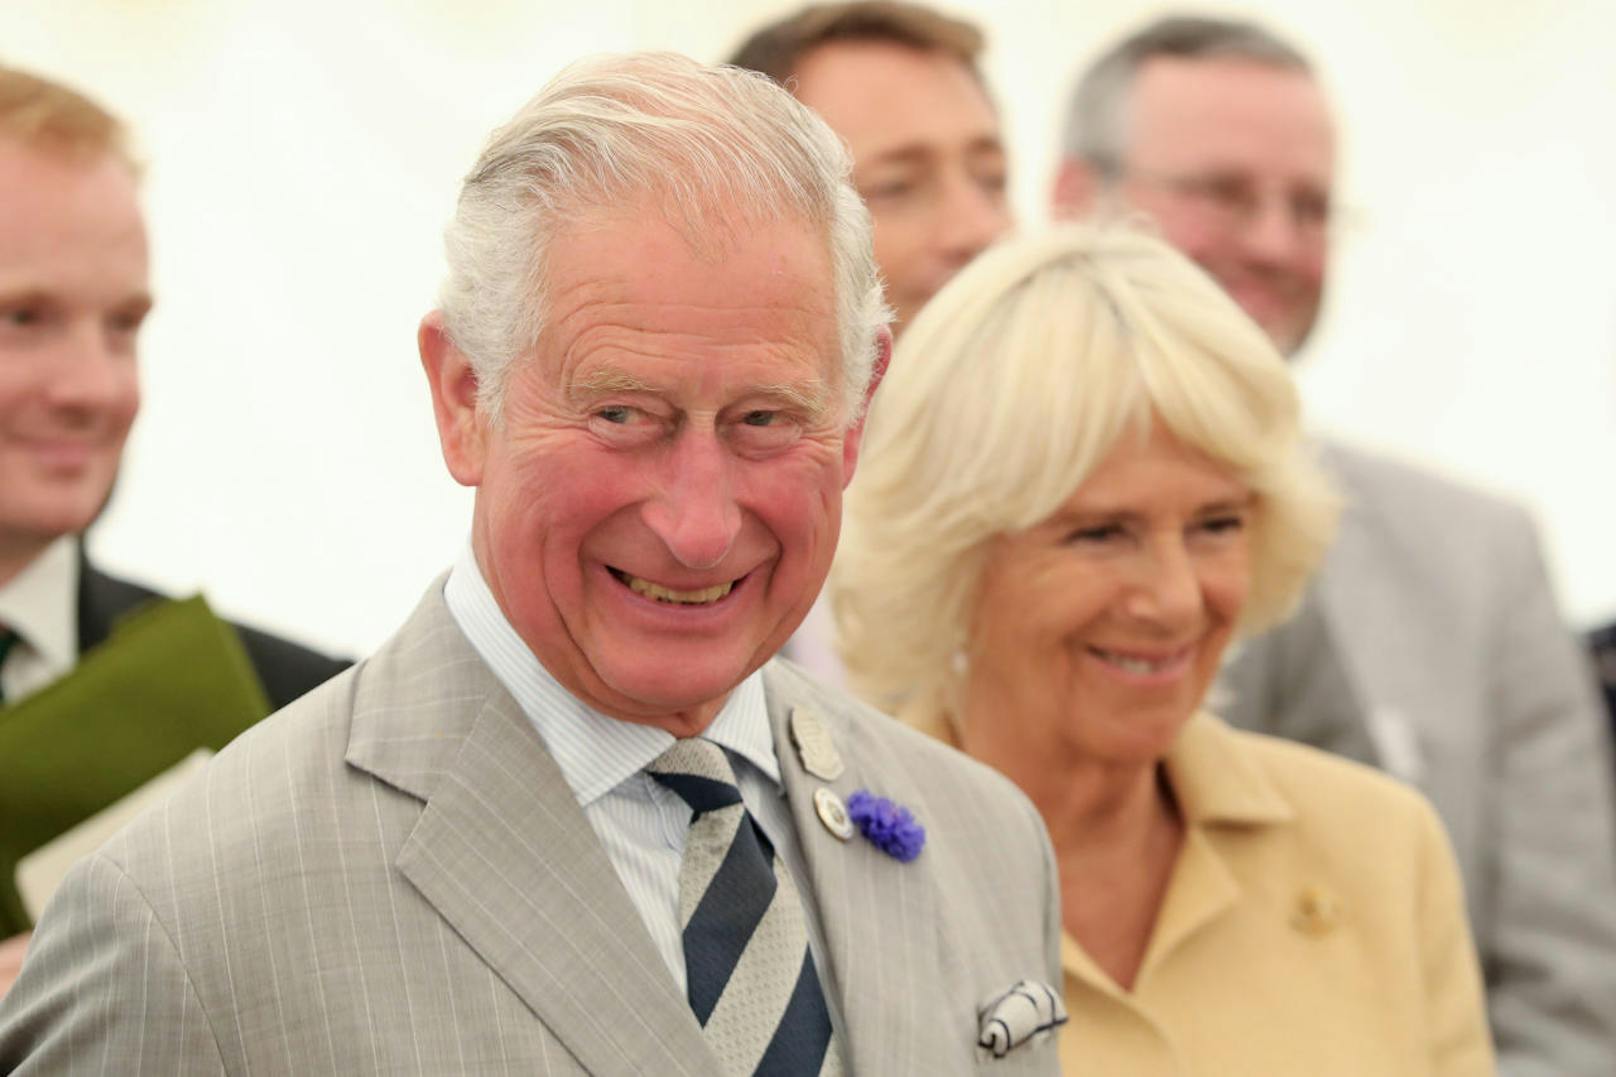 <b>Prinz Charles</b> ist für seinen Humor bekannt. Die Zeit in der Quarantäne vertrieb sich der britische Thronfolger am liebsten mit lustigen Internet-Videos.